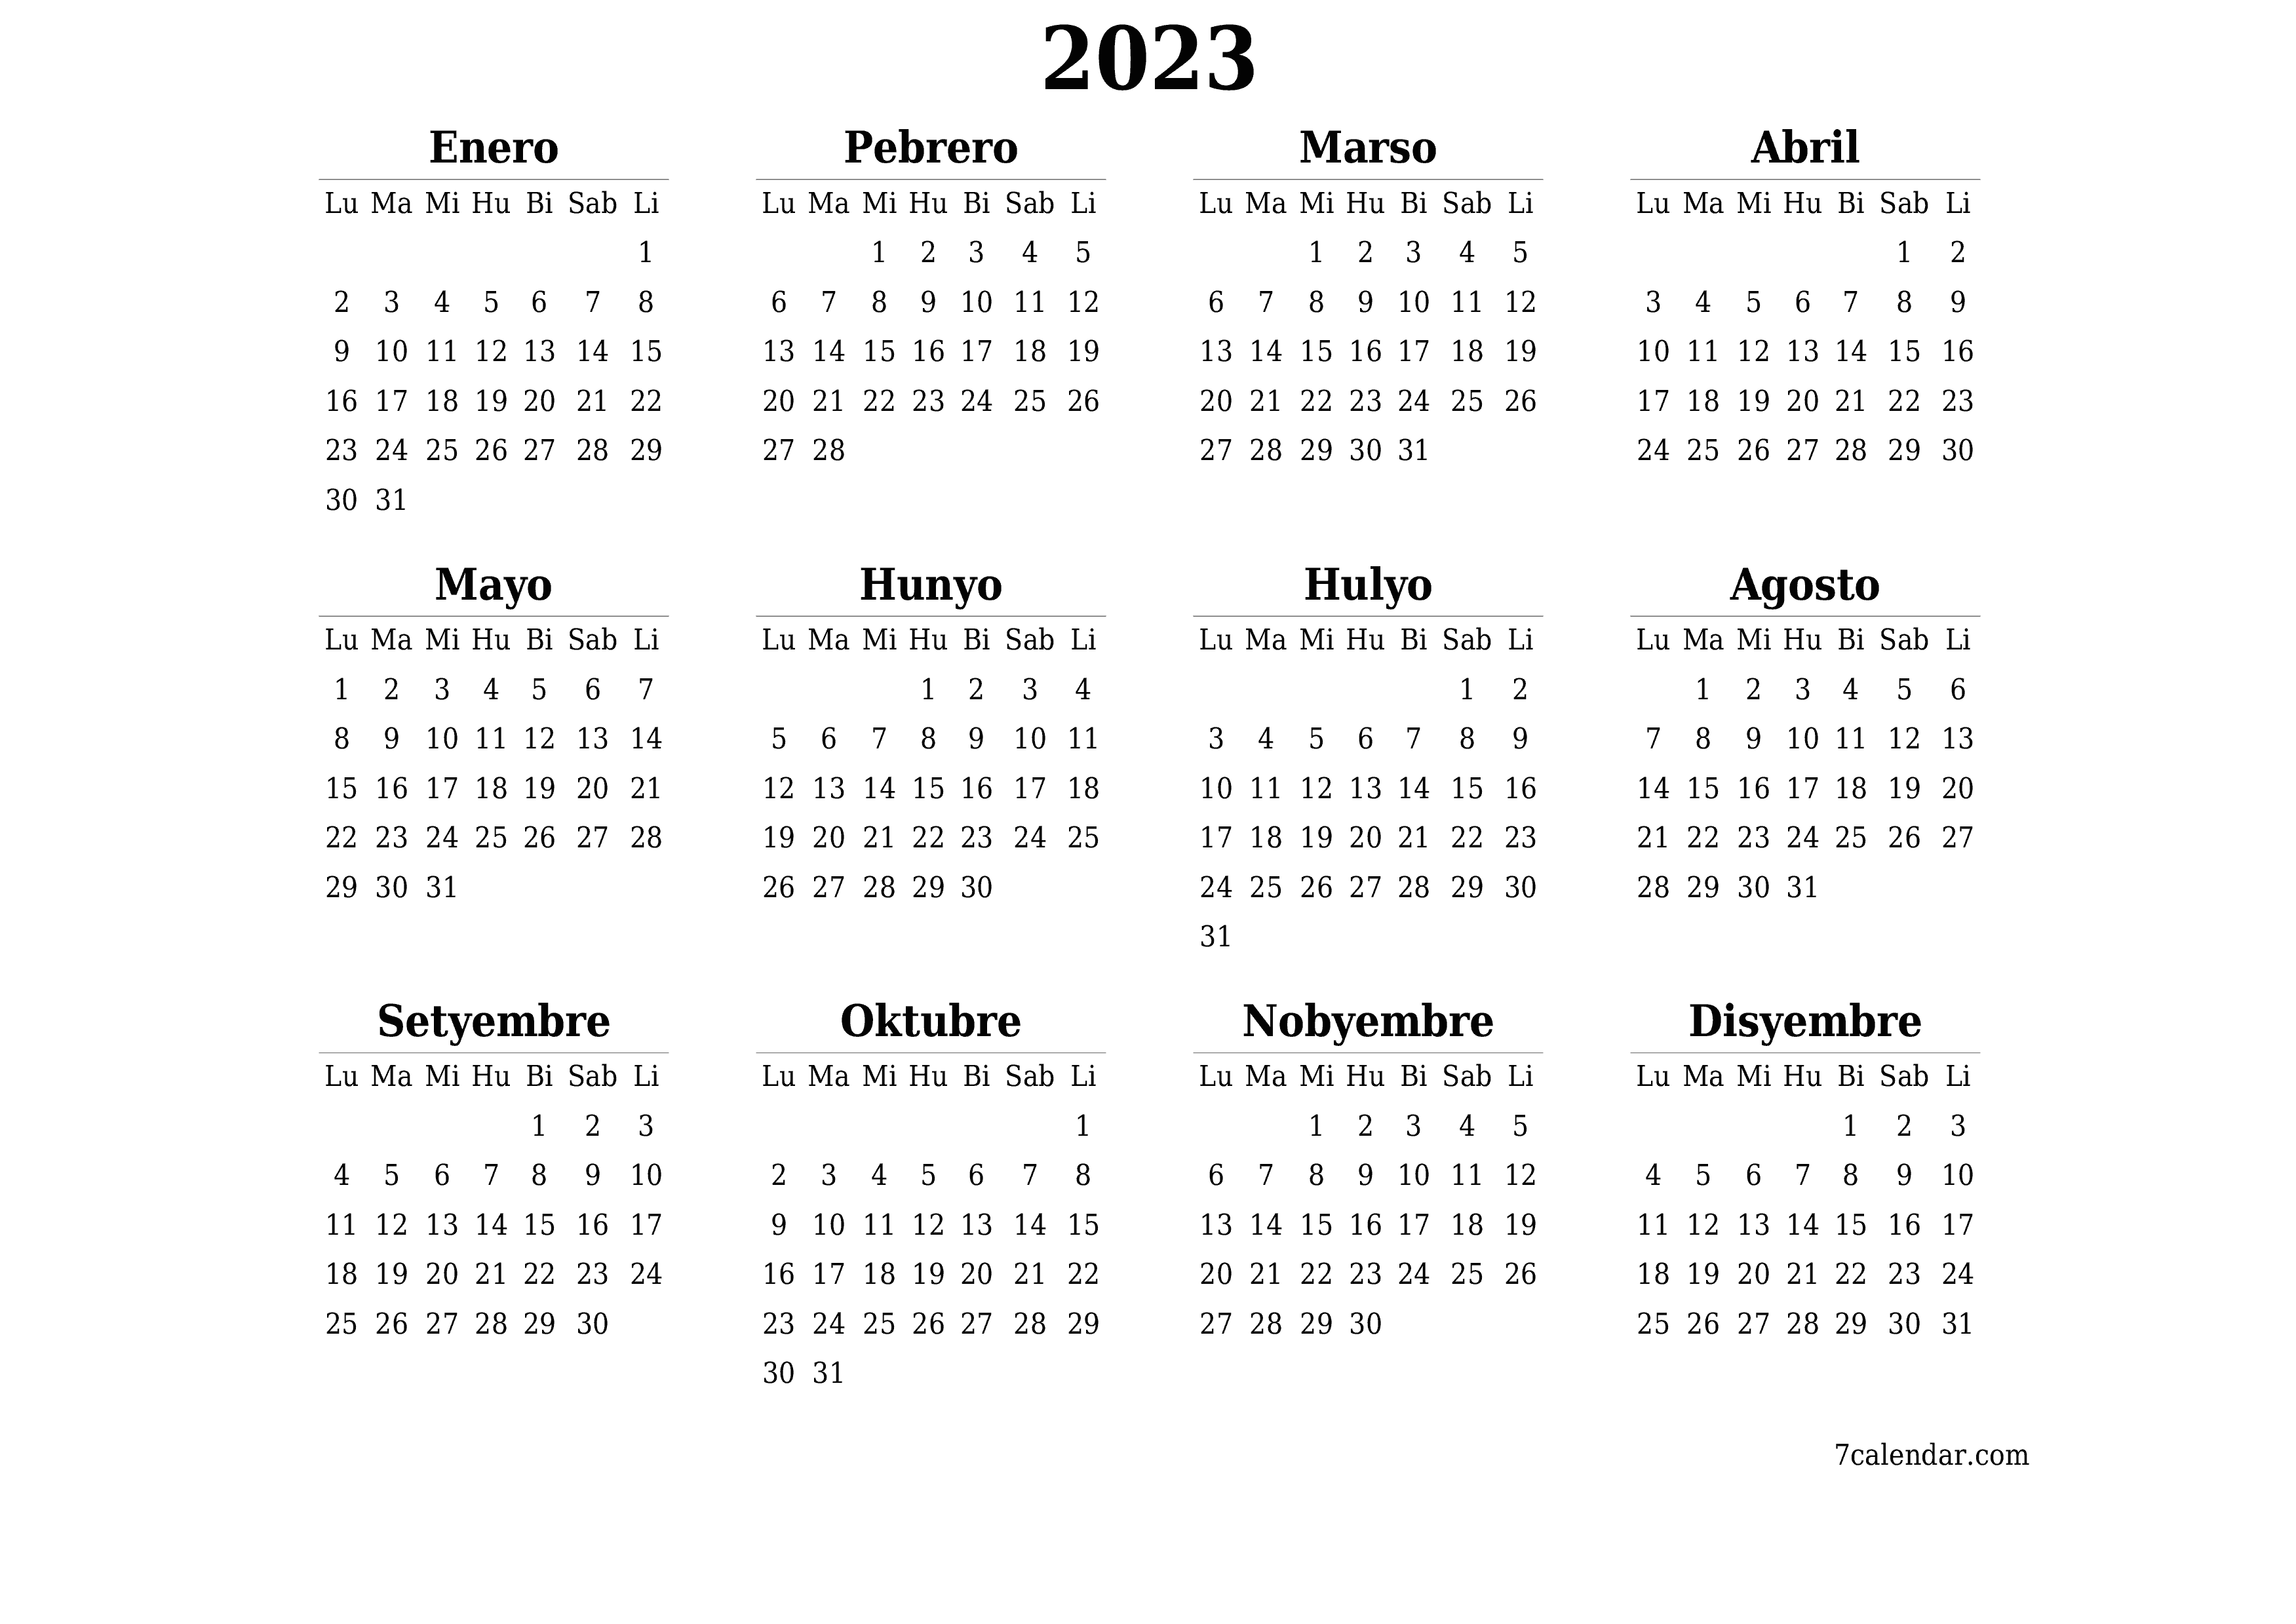 Blangkong taunang kalendaryo para sa taon 2023 i-save at i-print sa PDF PNG Filipino - 7calendar.com